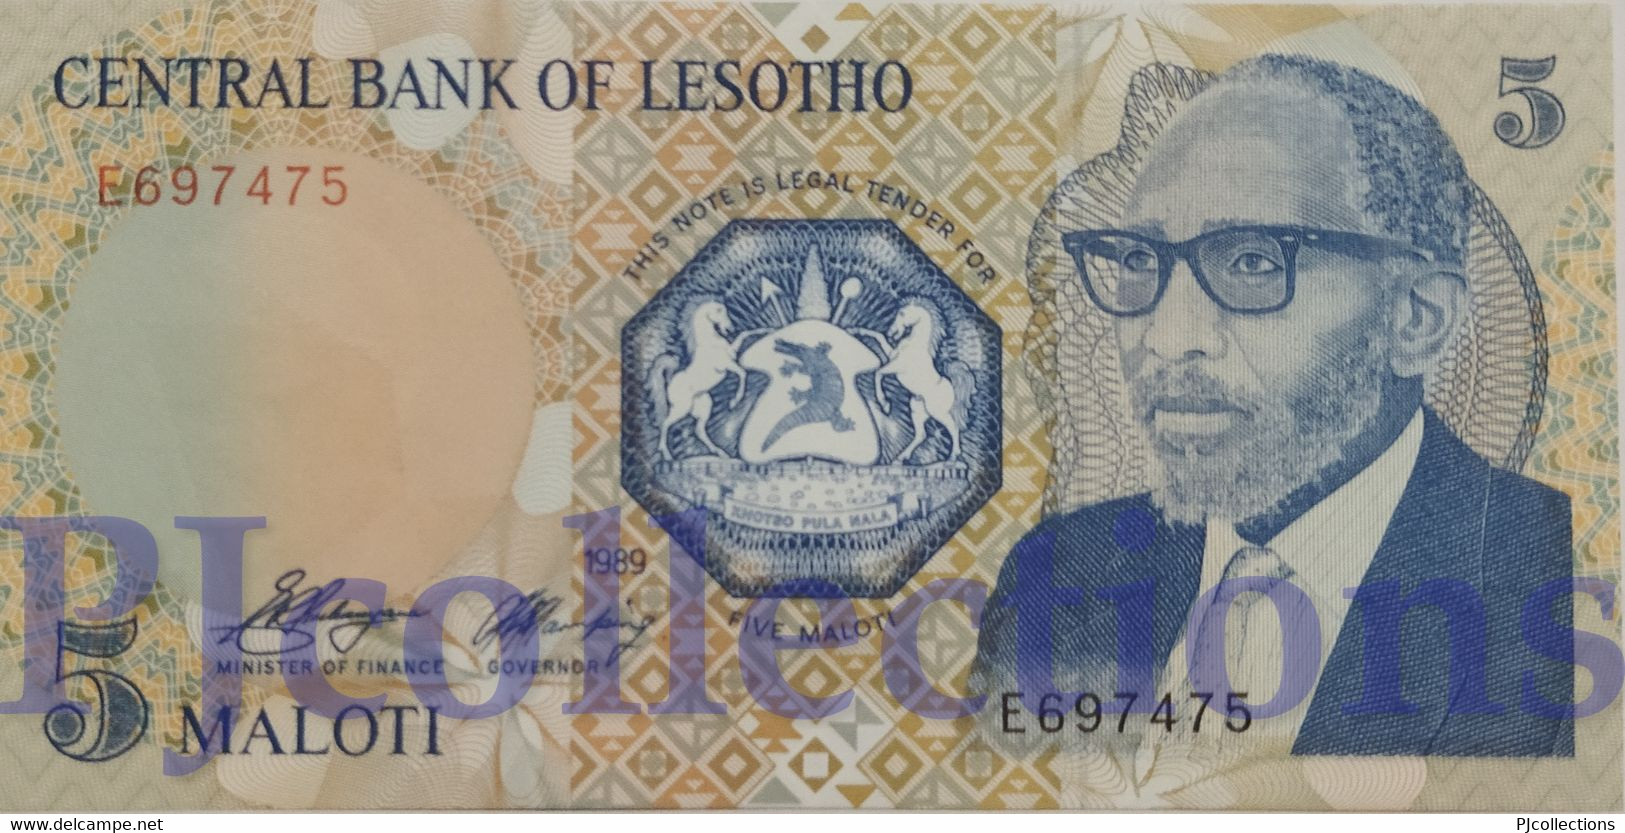 LESOTHO 5 MALOTI 1989 PICK 10 UNC - Lesotho